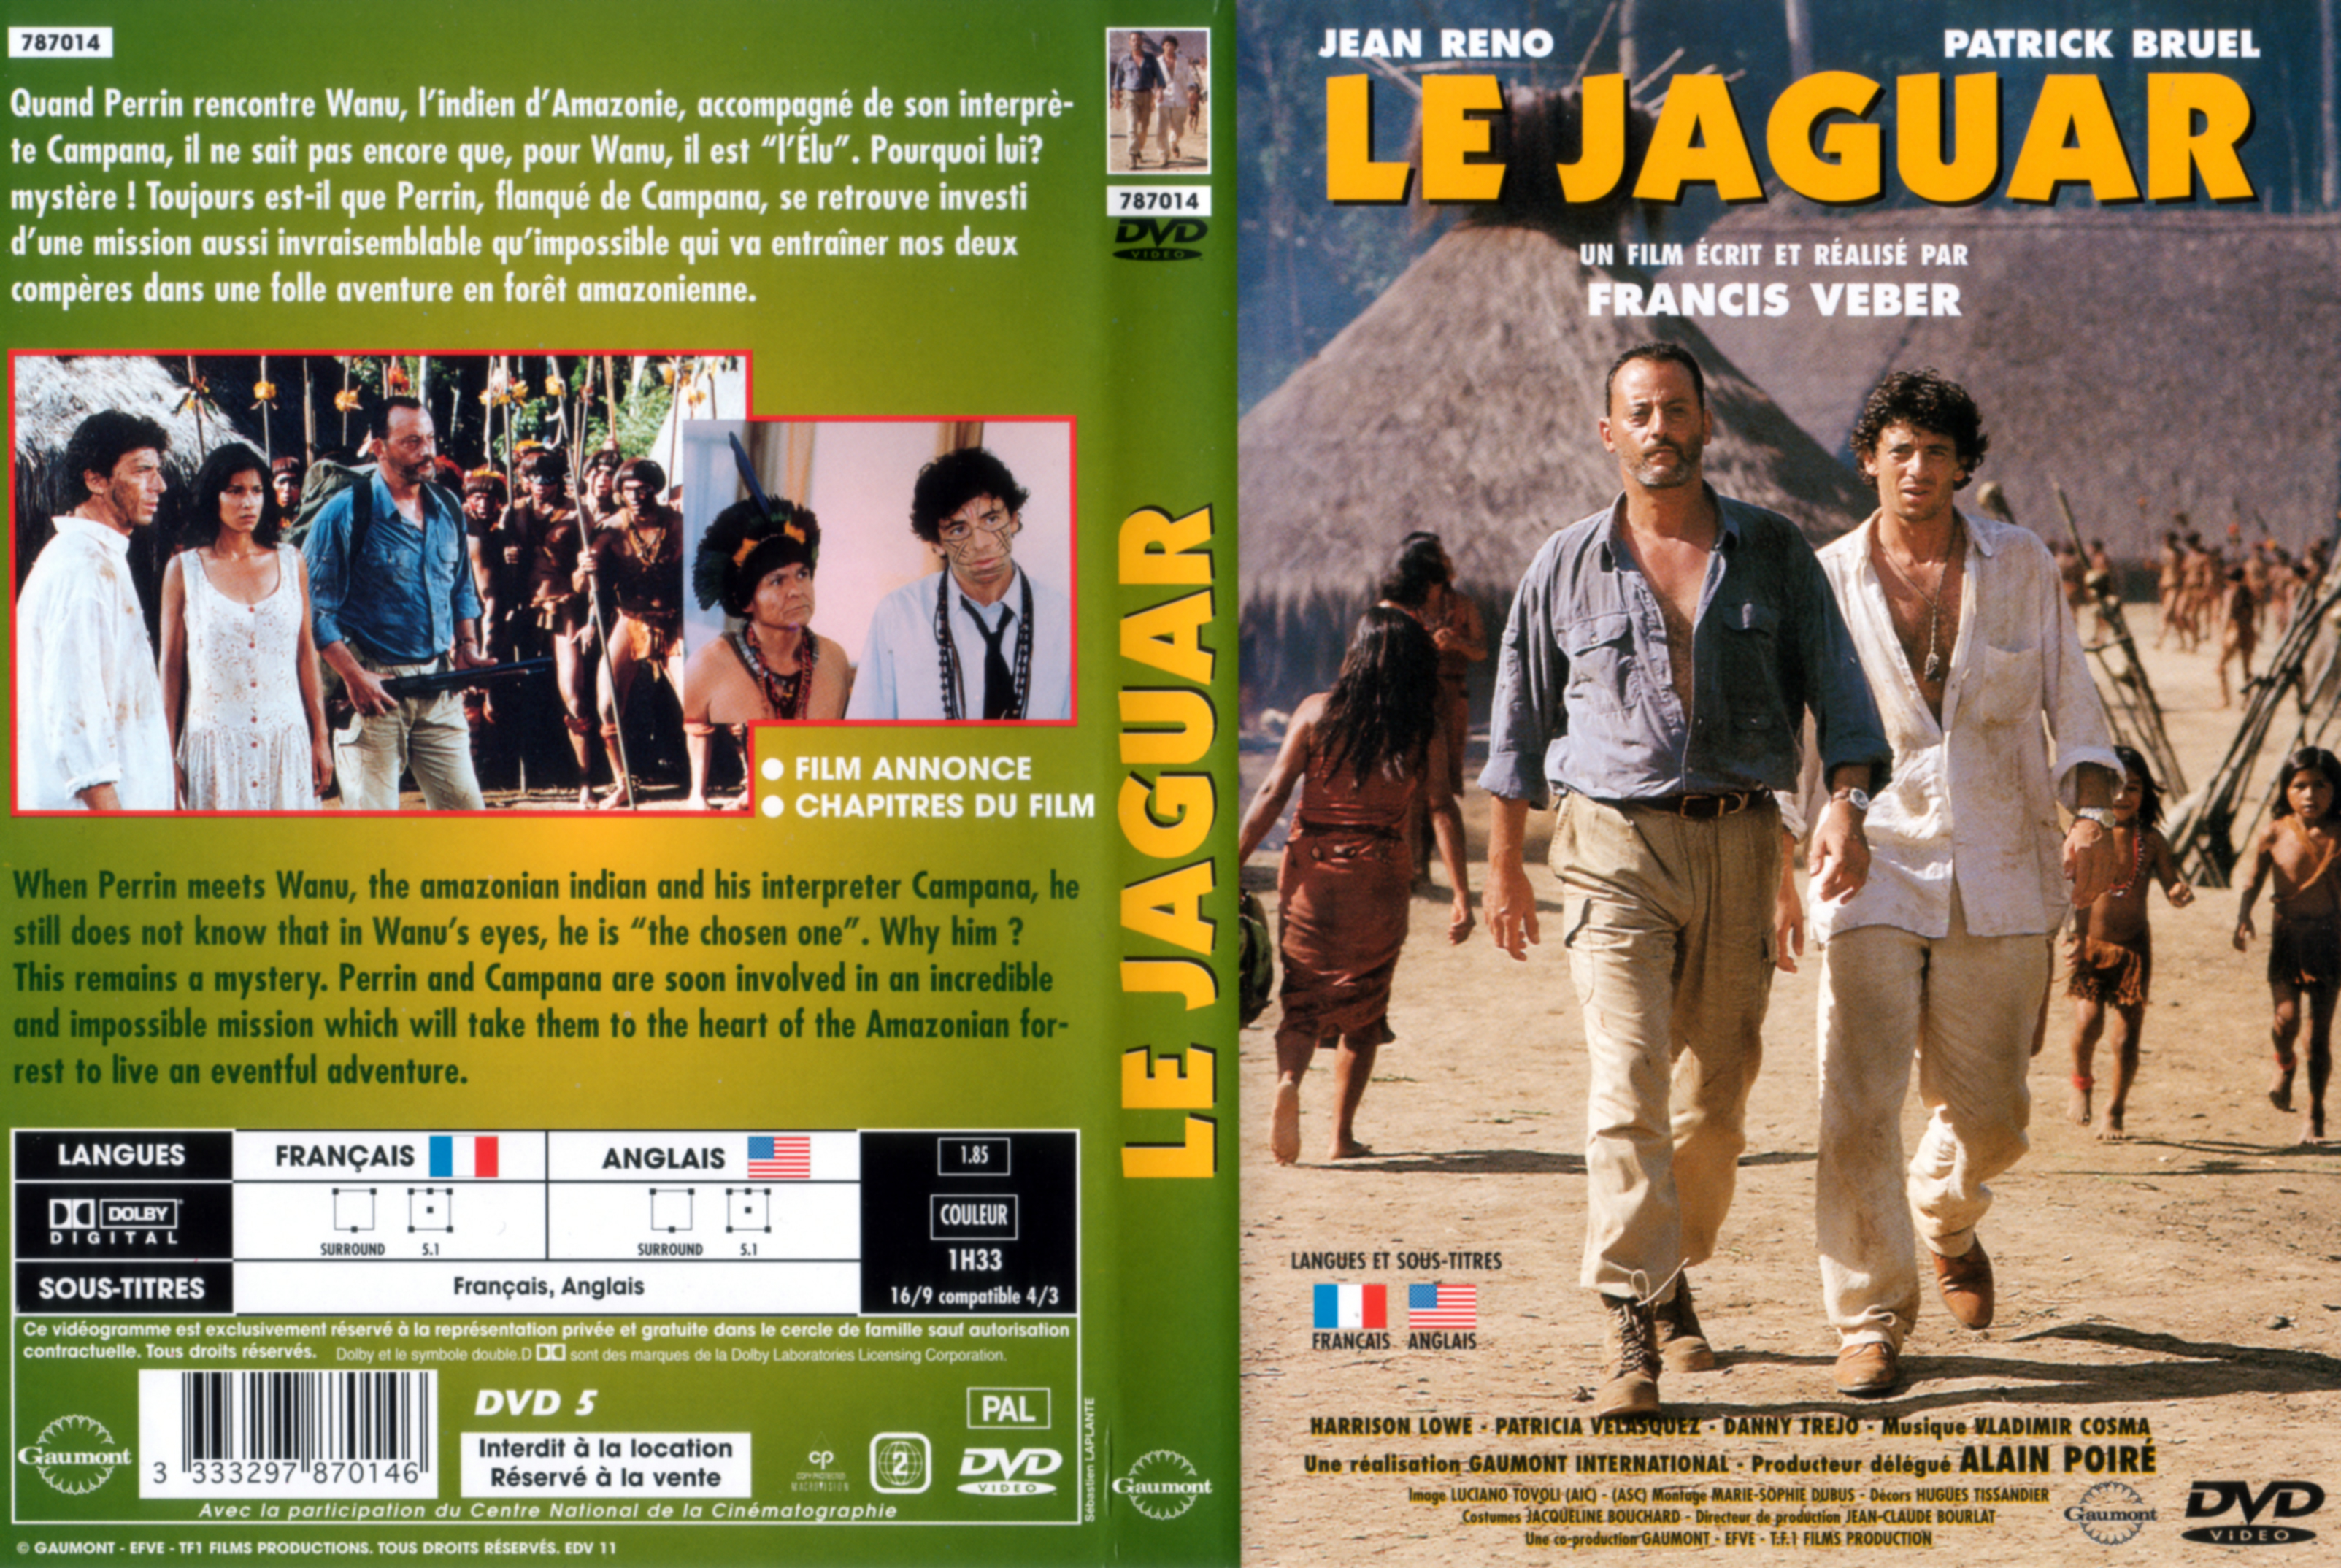 Jaquette DVD Le jaguar v2